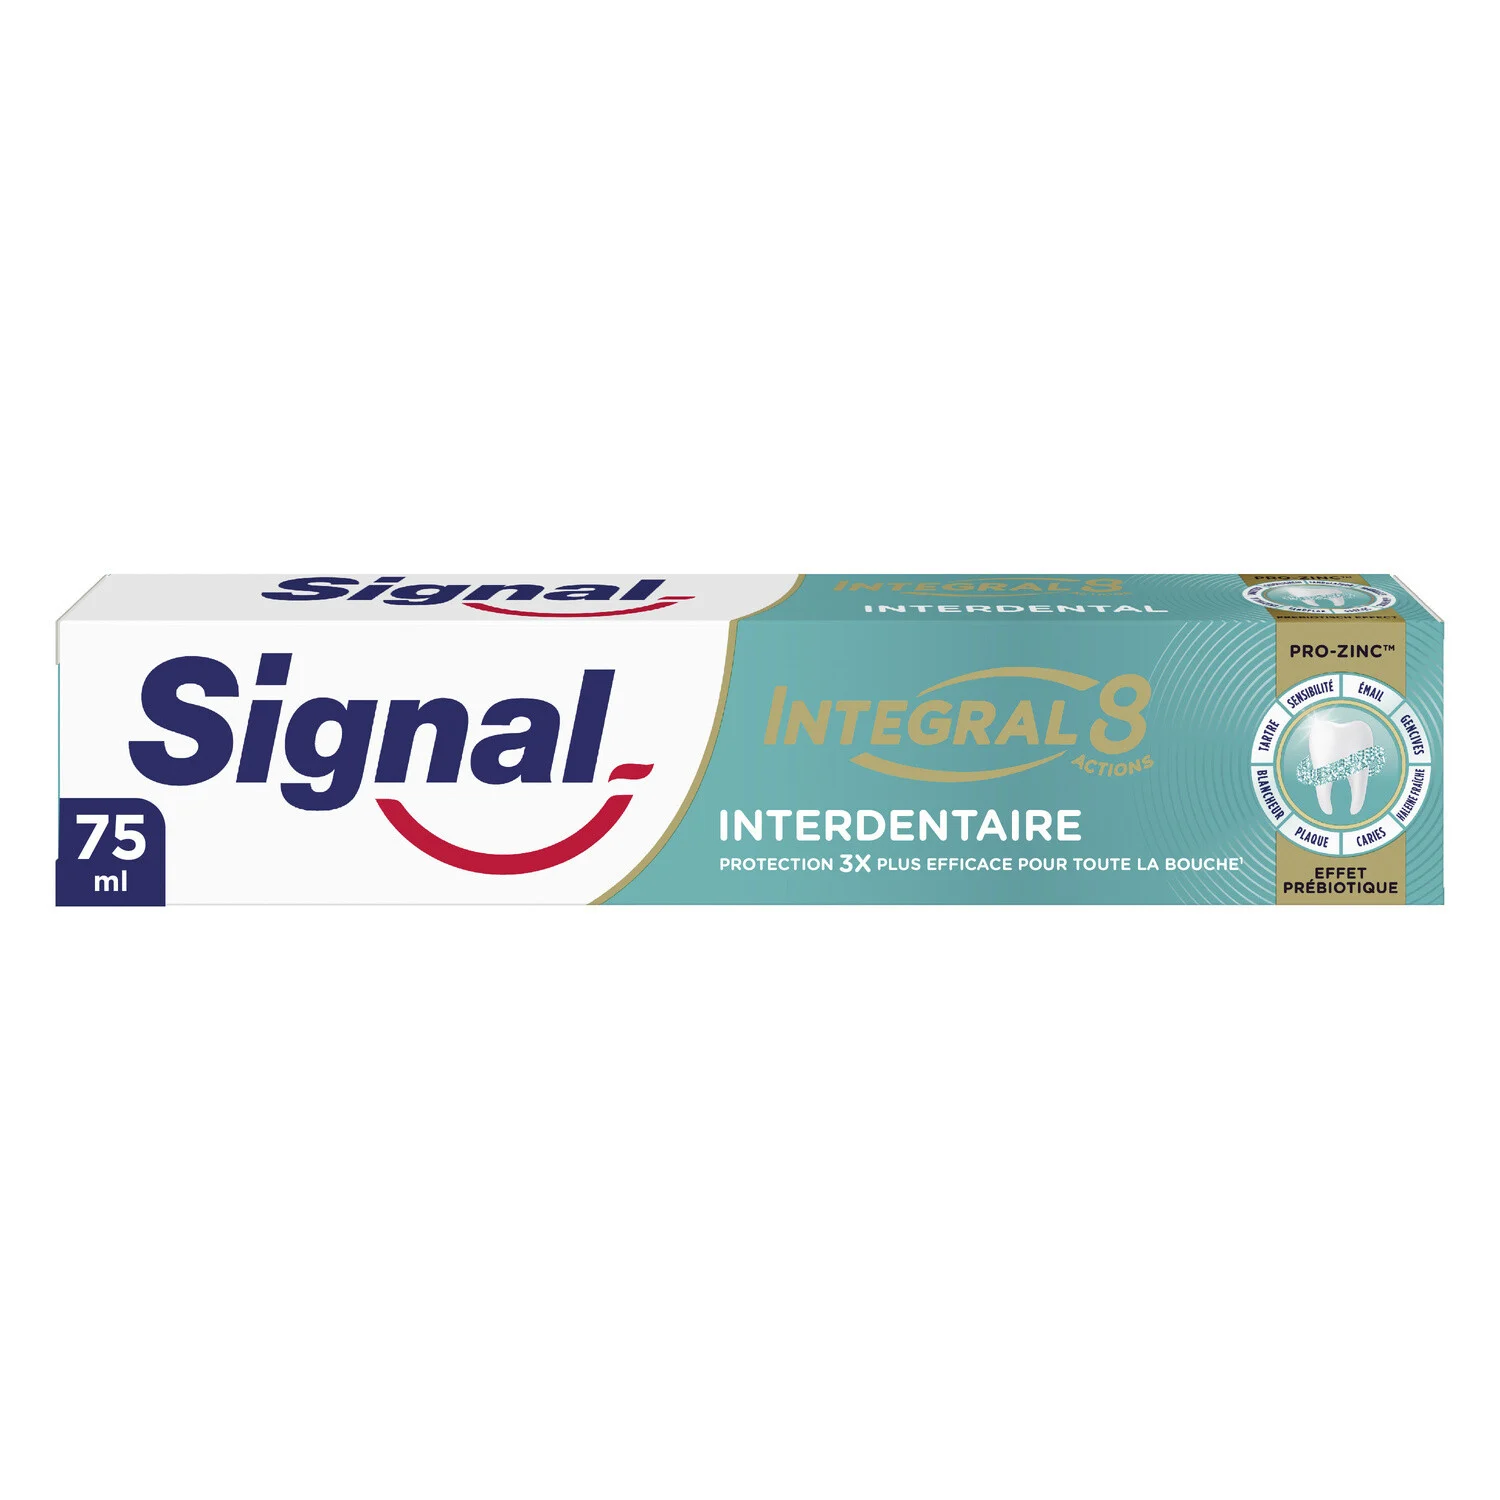 Dentifrice Integral 8 Interdentaire Effet Prébiotique 75ml -signal